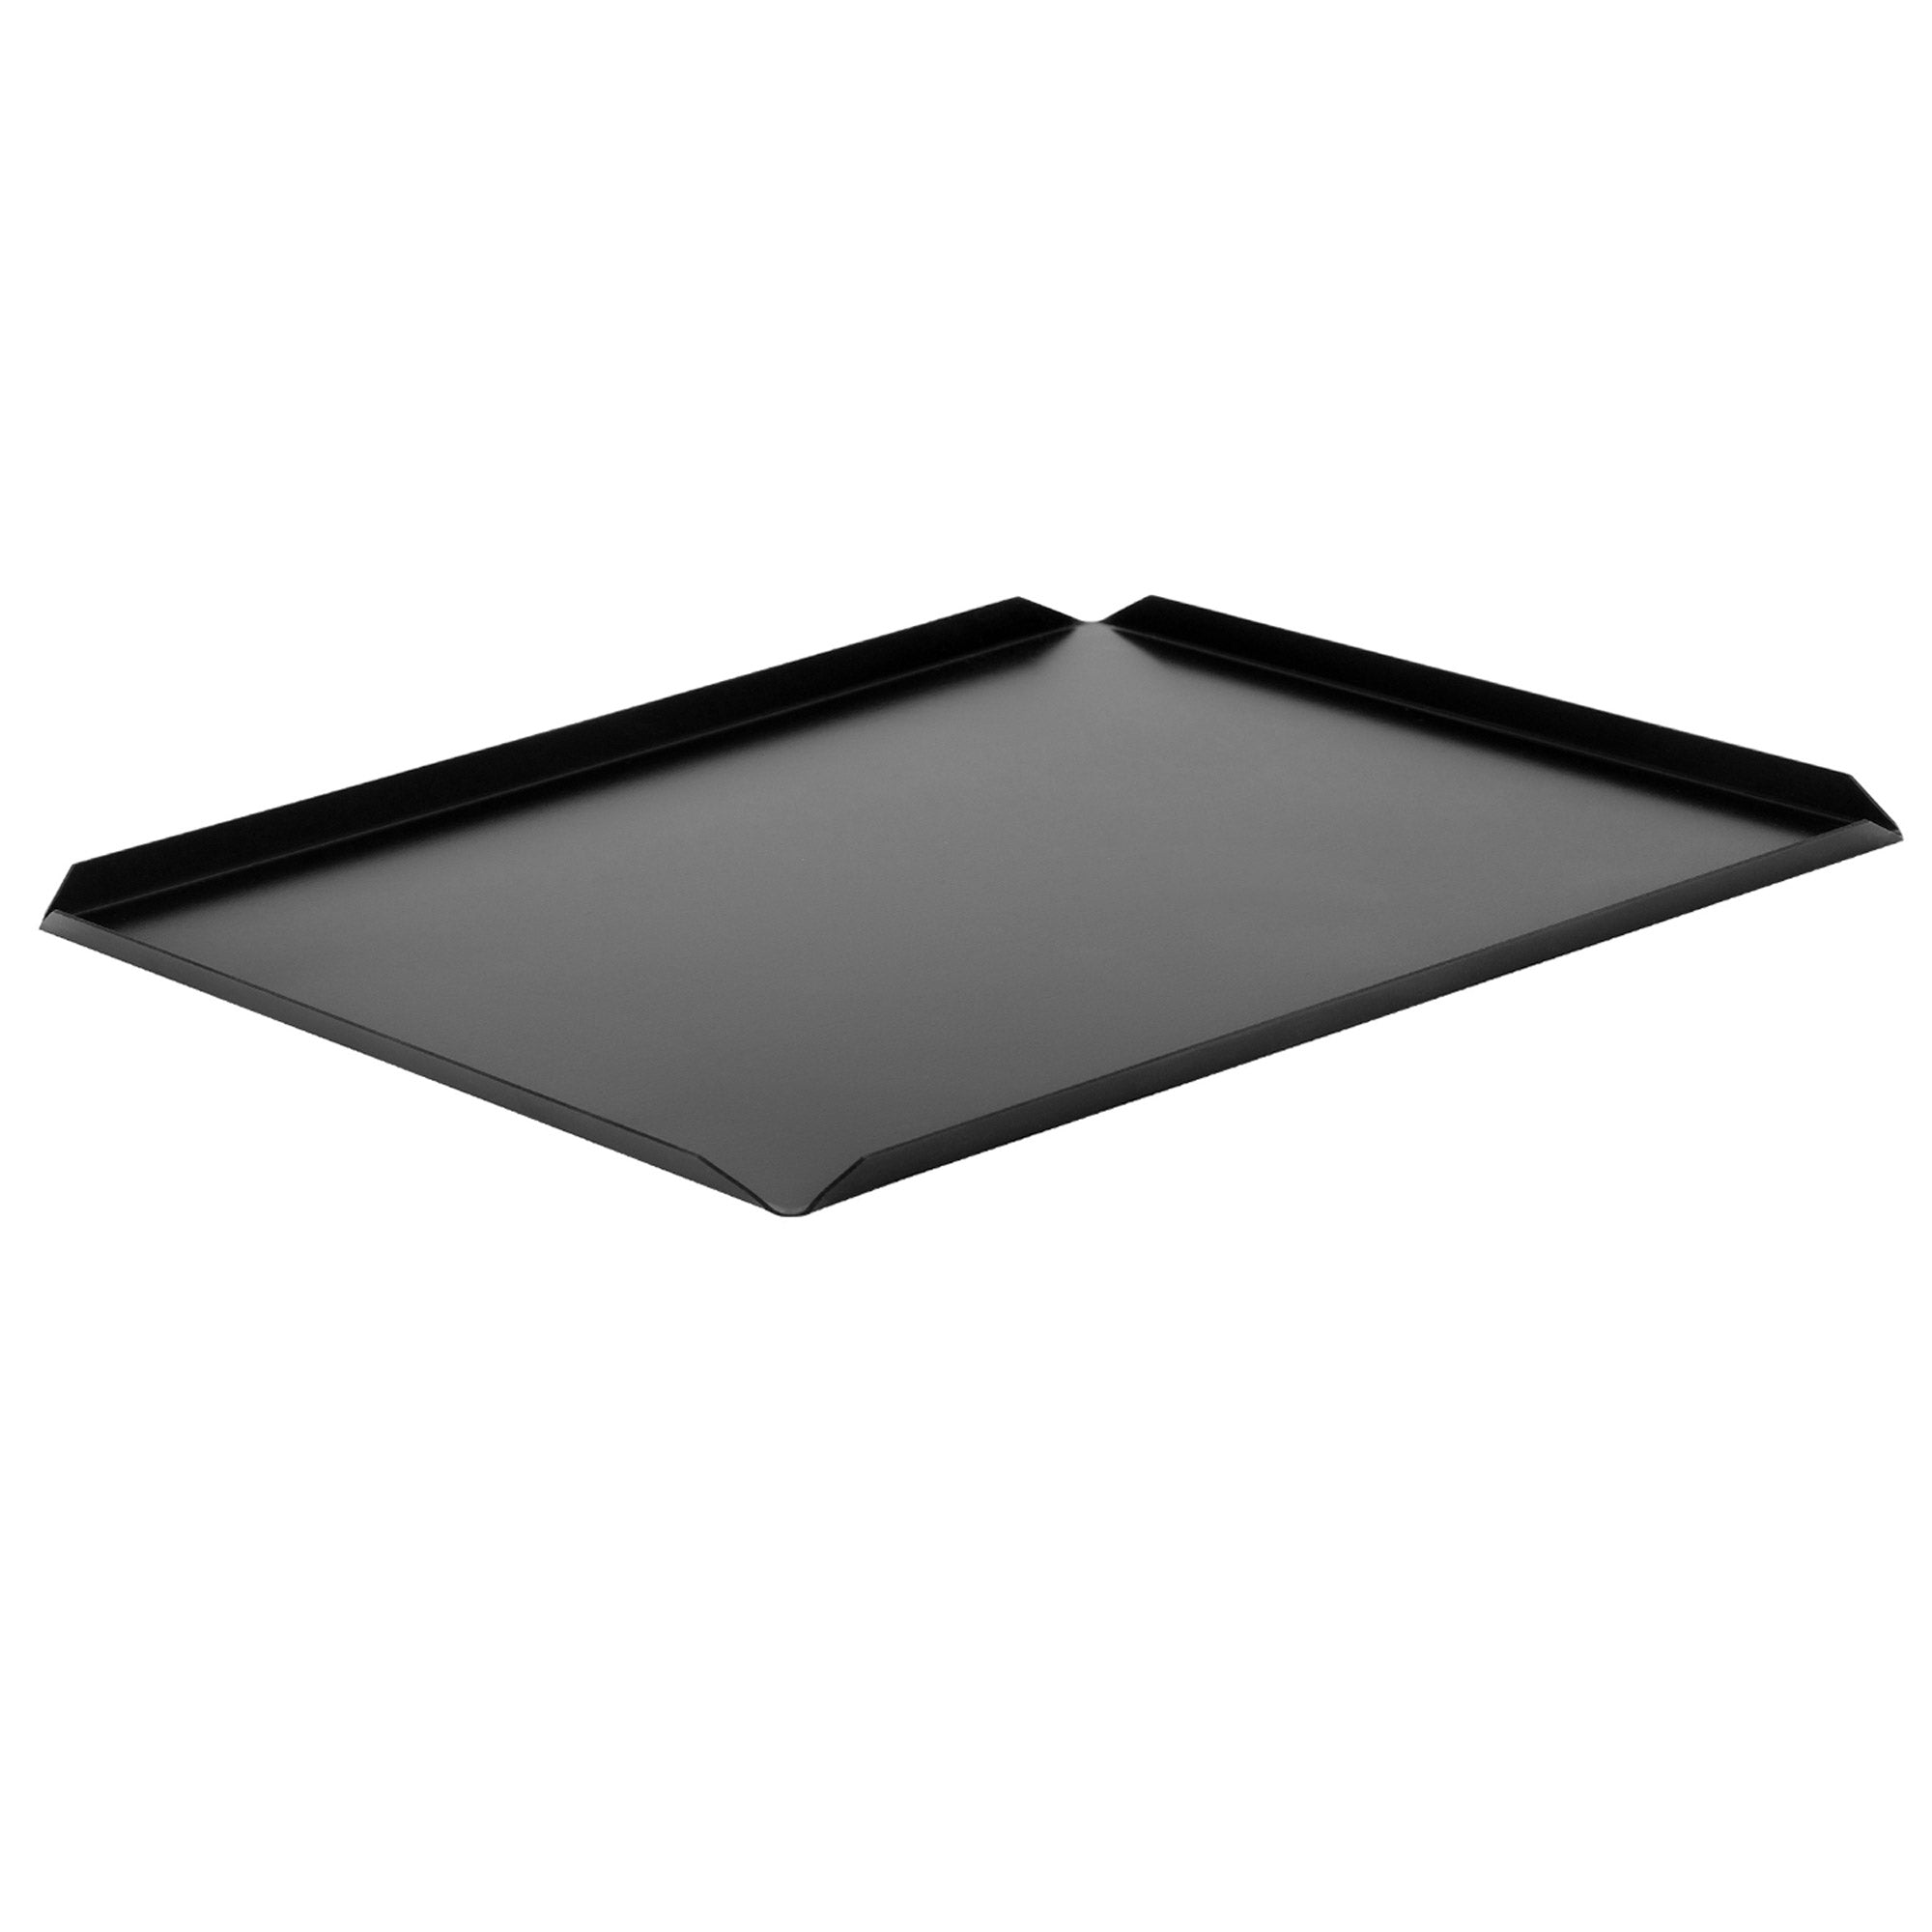 (5 бр.) Алуминиева плоча за сладкарски изделия и презентации - 600 x 400 x 10 mm - черна